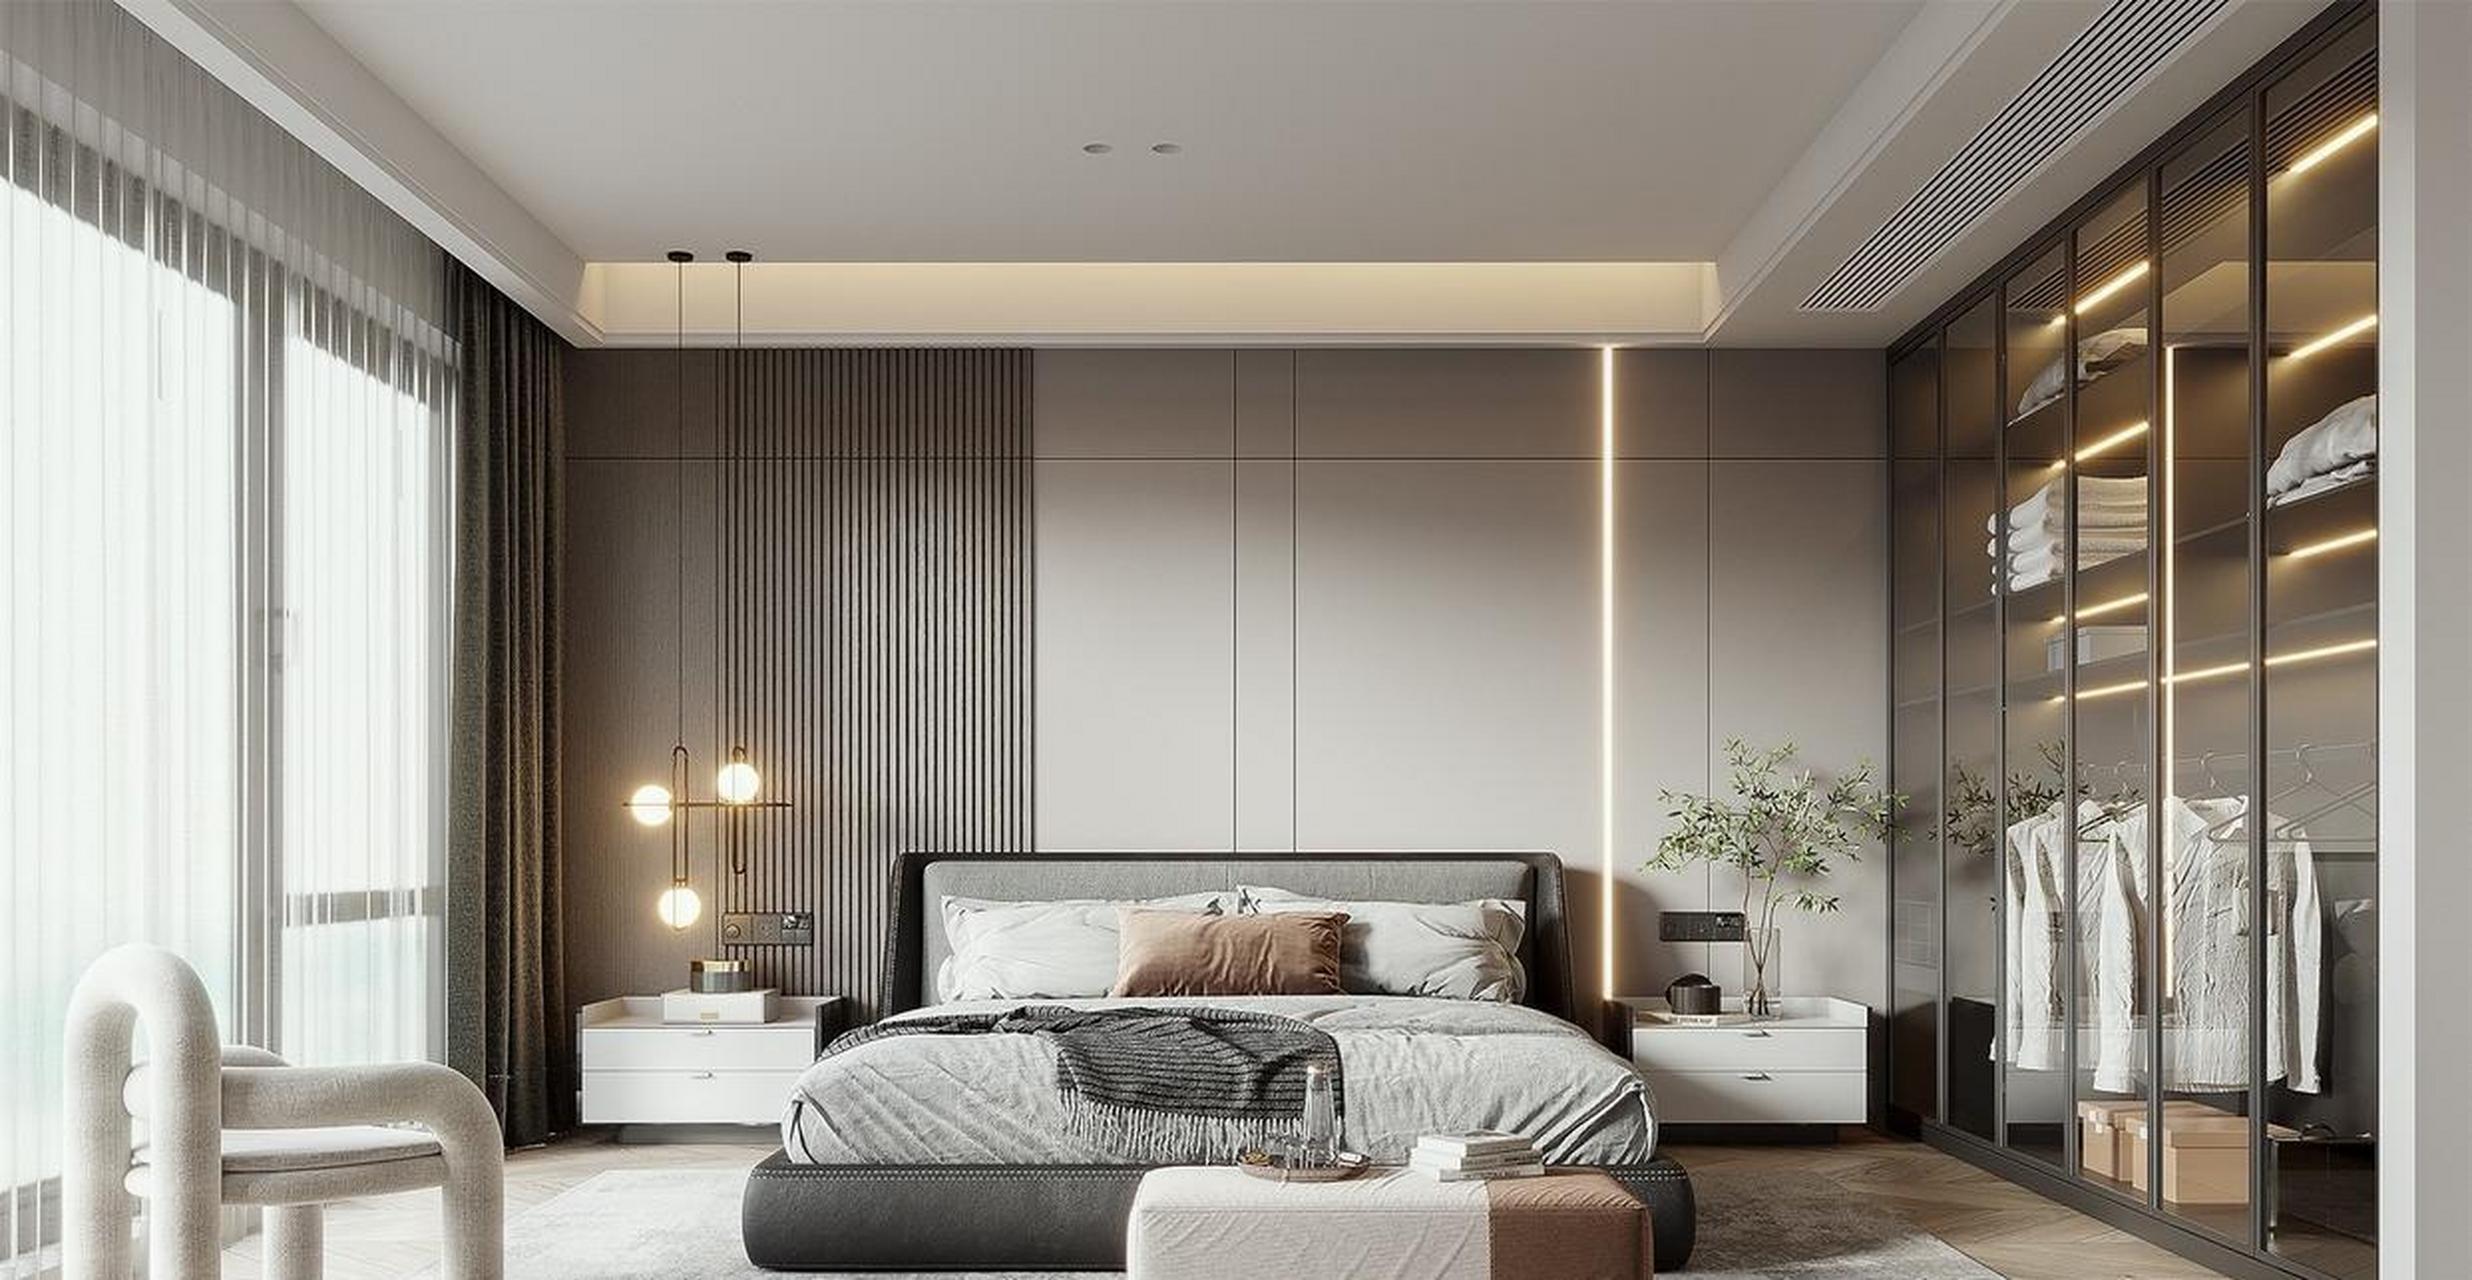 卧室设计效果图你喜欢哪一个?